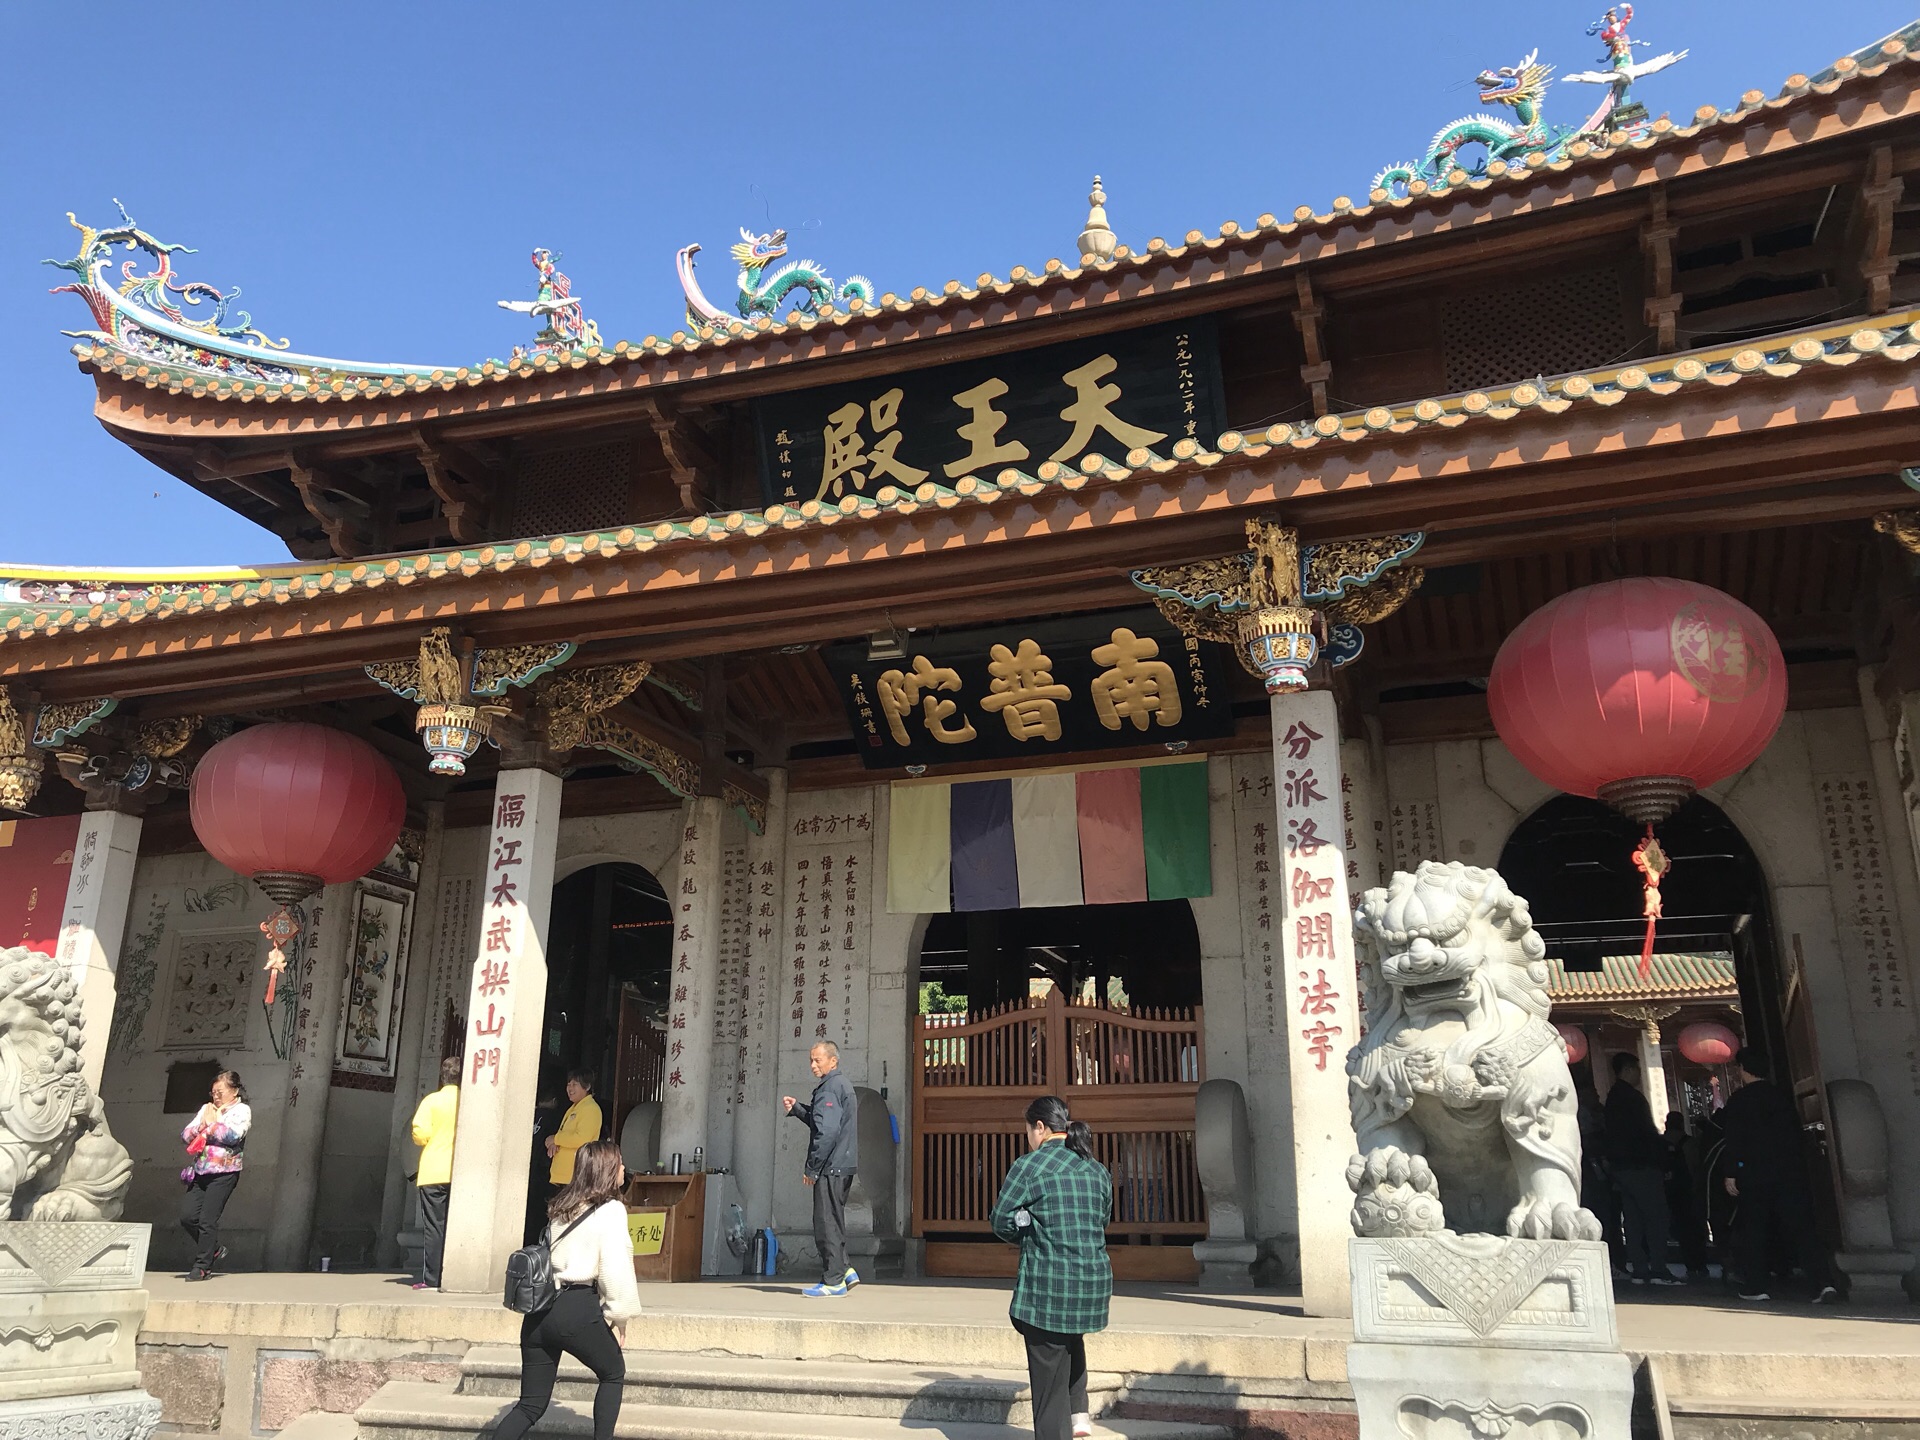 上海玉佛寺天王殿图片